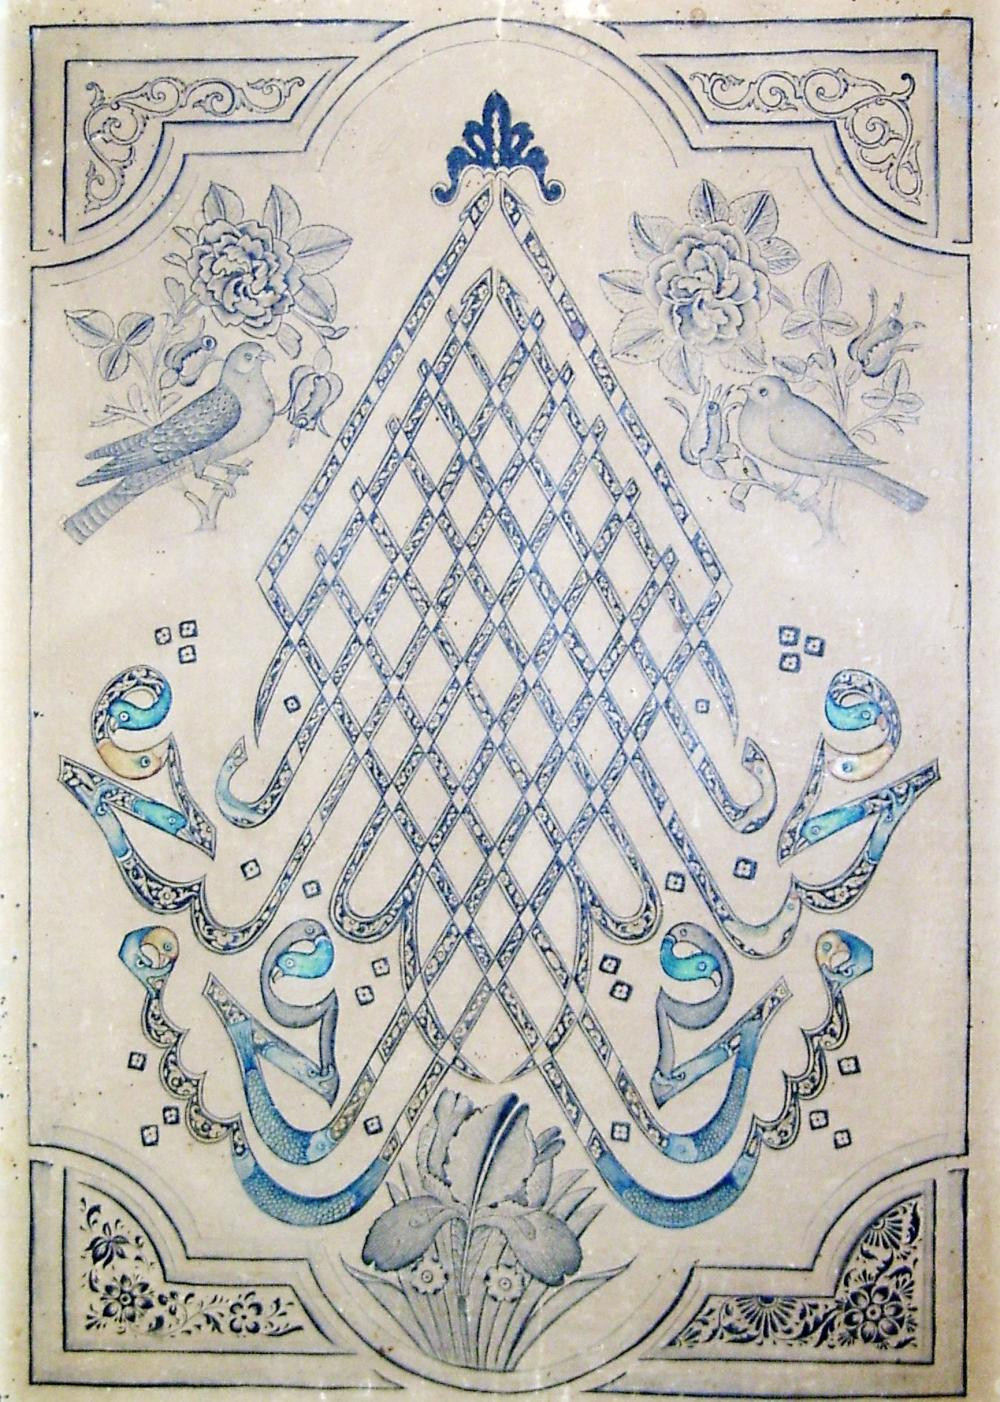 Bədii kalliqrafiya nümunəsi<br> © Naməlum rəssam/Milli İncəsənət Muzeyi, XIX əsr